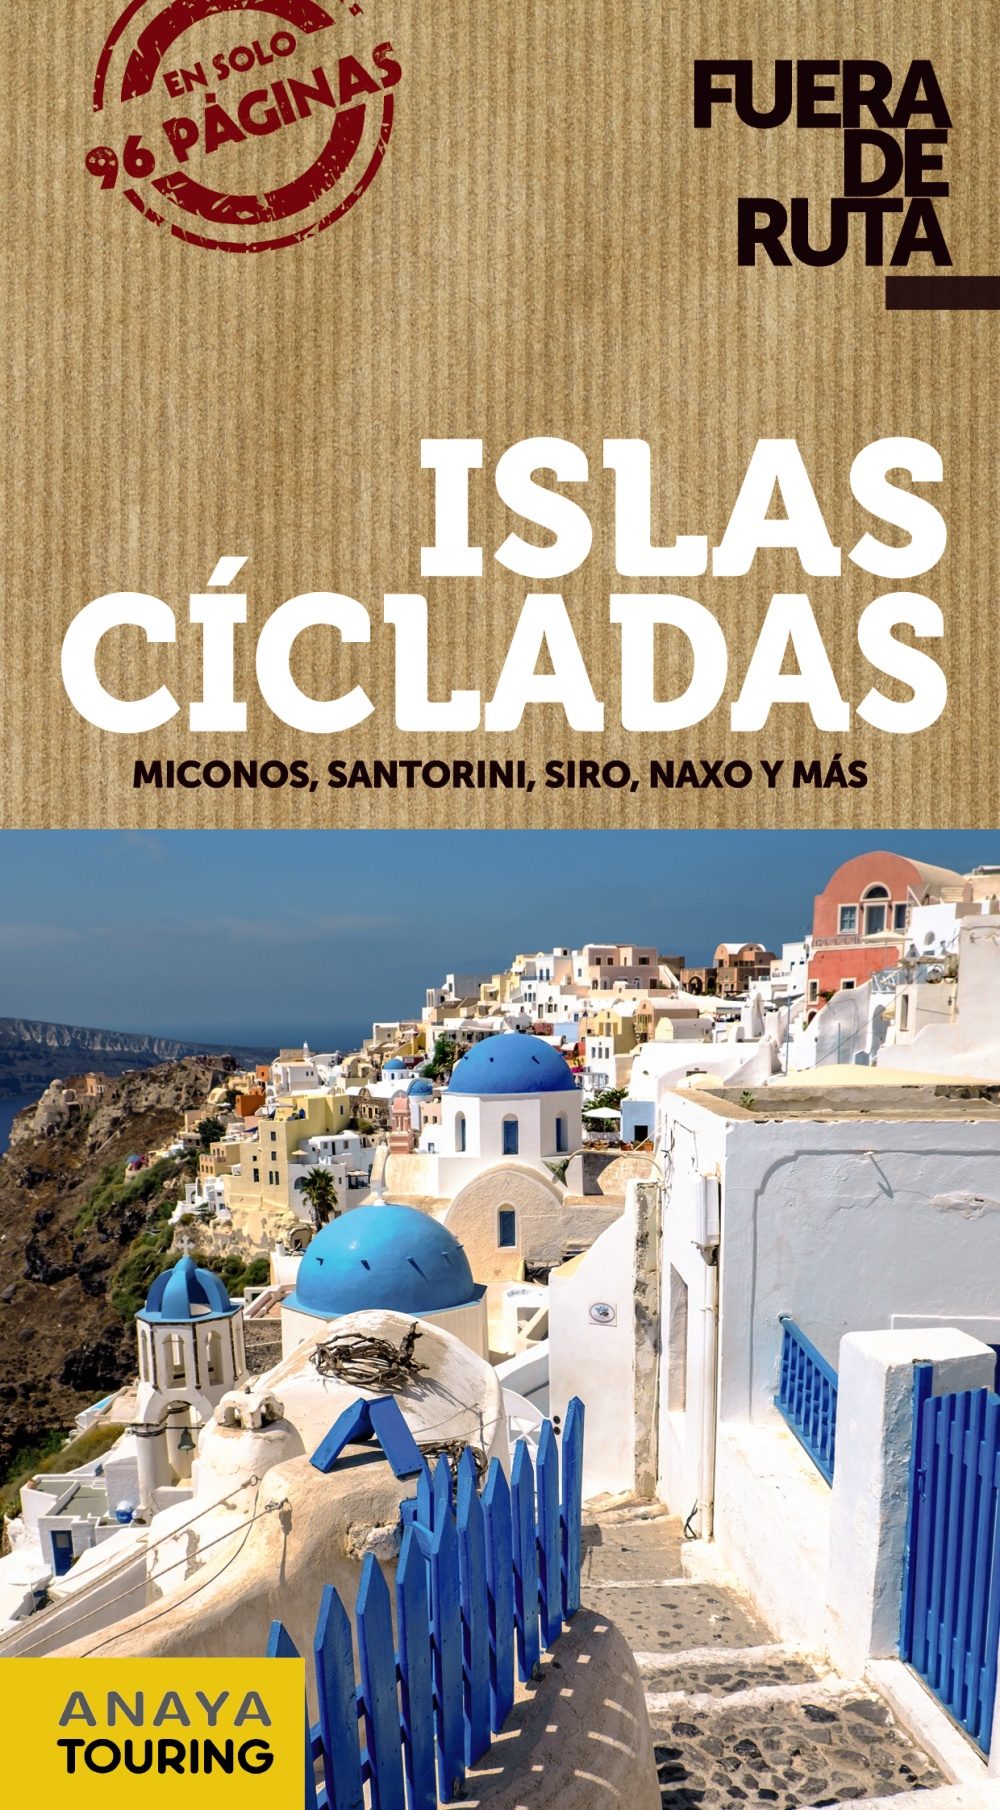 Islas Cicladas (Fuera de ruta)